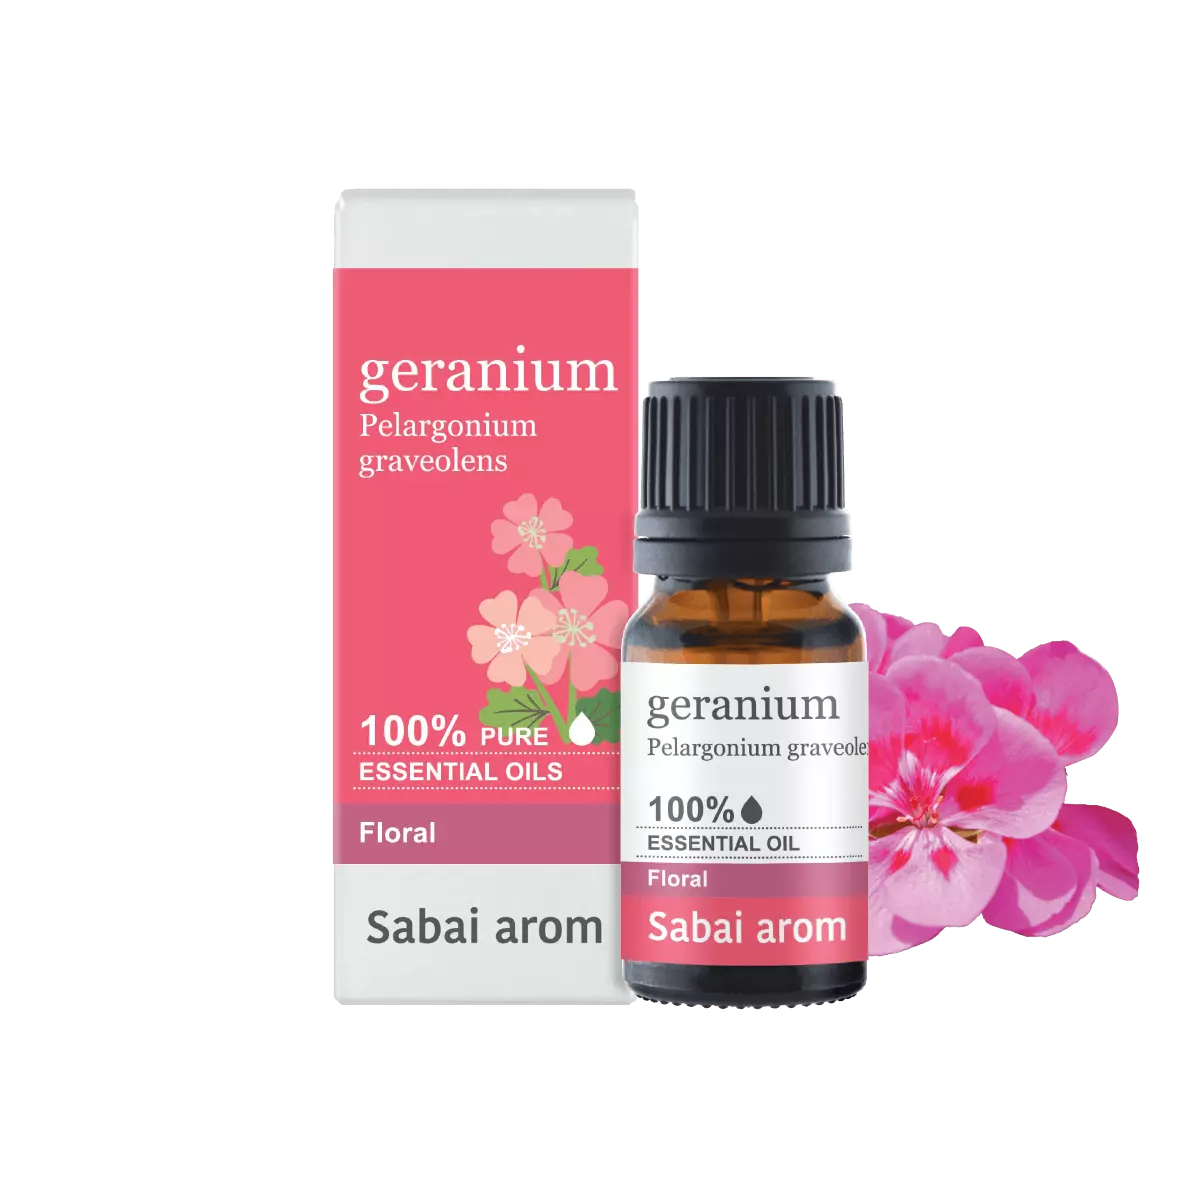 essential oil geranium <h2>100% Pure Essential Oil</h2> <em><strong>Pelargonium Graveolens</strong></em> <strong>Source : </strong>อียิปต์ น้ำมันหอมระเหยเจอราเนียม (Geranium) มีกลิ่นหอม ผ่อนคลาย ช่วยบรรเทาความเครียดอ่อนเพลีย ที่สำคัญคือมีคุณสมบัติในการช่วยปลอมประโลมจิตใจของคนที่หัวใจสลายให้รู้สึกดีขึ้น ช่วยให้พวกเขาปล่อยวางจากอดีตอันเจ็บช้ำ ให้คนที่เคยหมดหวังกับผู้คนบนโลกให้เข้าใจถึงเจตนาดีของคนรอบข้างและกลับมาเชื่อมสัมพันธ์อีกครั้ง เจอราเนียมยังช่วยขุดความทรงจำที่ฝังแน่นในใจขึ้นมา เพื่อให้เราได้ใช้สติ พิจารณาสิ่งที่เคยผิดพลาดในอดีต เพื่อที่จะปล่อยวางและก้าวข้าม นอกจากนียังช่วยให้ผู้ที่ร่างกายอ่อนล้า ให้สดชื่นและฟื้นตัวได้ดี บรรเทาอาการเมาค้างหรือวิงเวียนต่าง ๆ มีคุณสมบัติในการขจัดเซลลูไลท์และกระตุ้นการทำงานของระบบน้ำเหลืองและระบบไหลเวียนโลหิต รวมทั้งเป็นสารขับไล่ยุงและแมลงอีกด้วย <strong>Scent : </strong>Sweet, floral and fruity. <strong>Family : </strong>กลิ่นแนวดอกไม้ <strong>Note : </strong>Middle